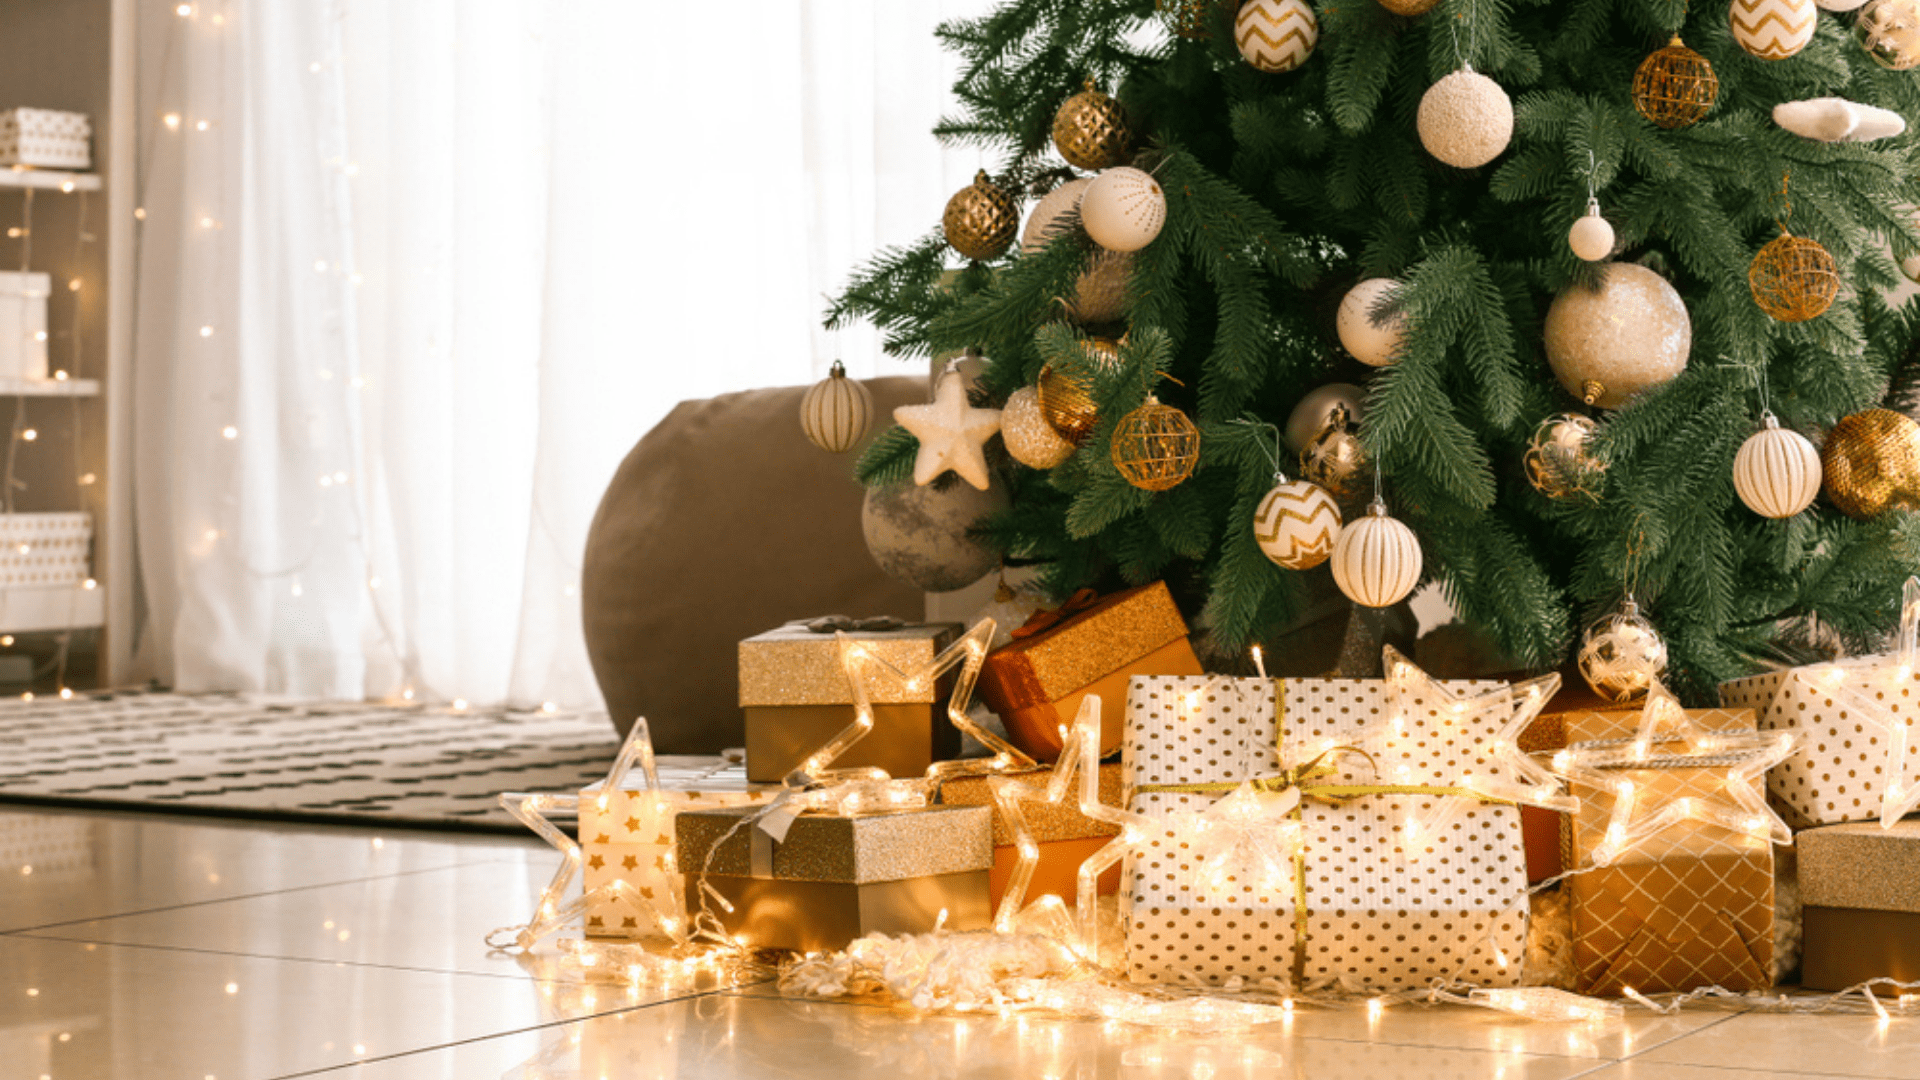 Decoração de Natal 2020: tendências para decorar a casa para o Natal